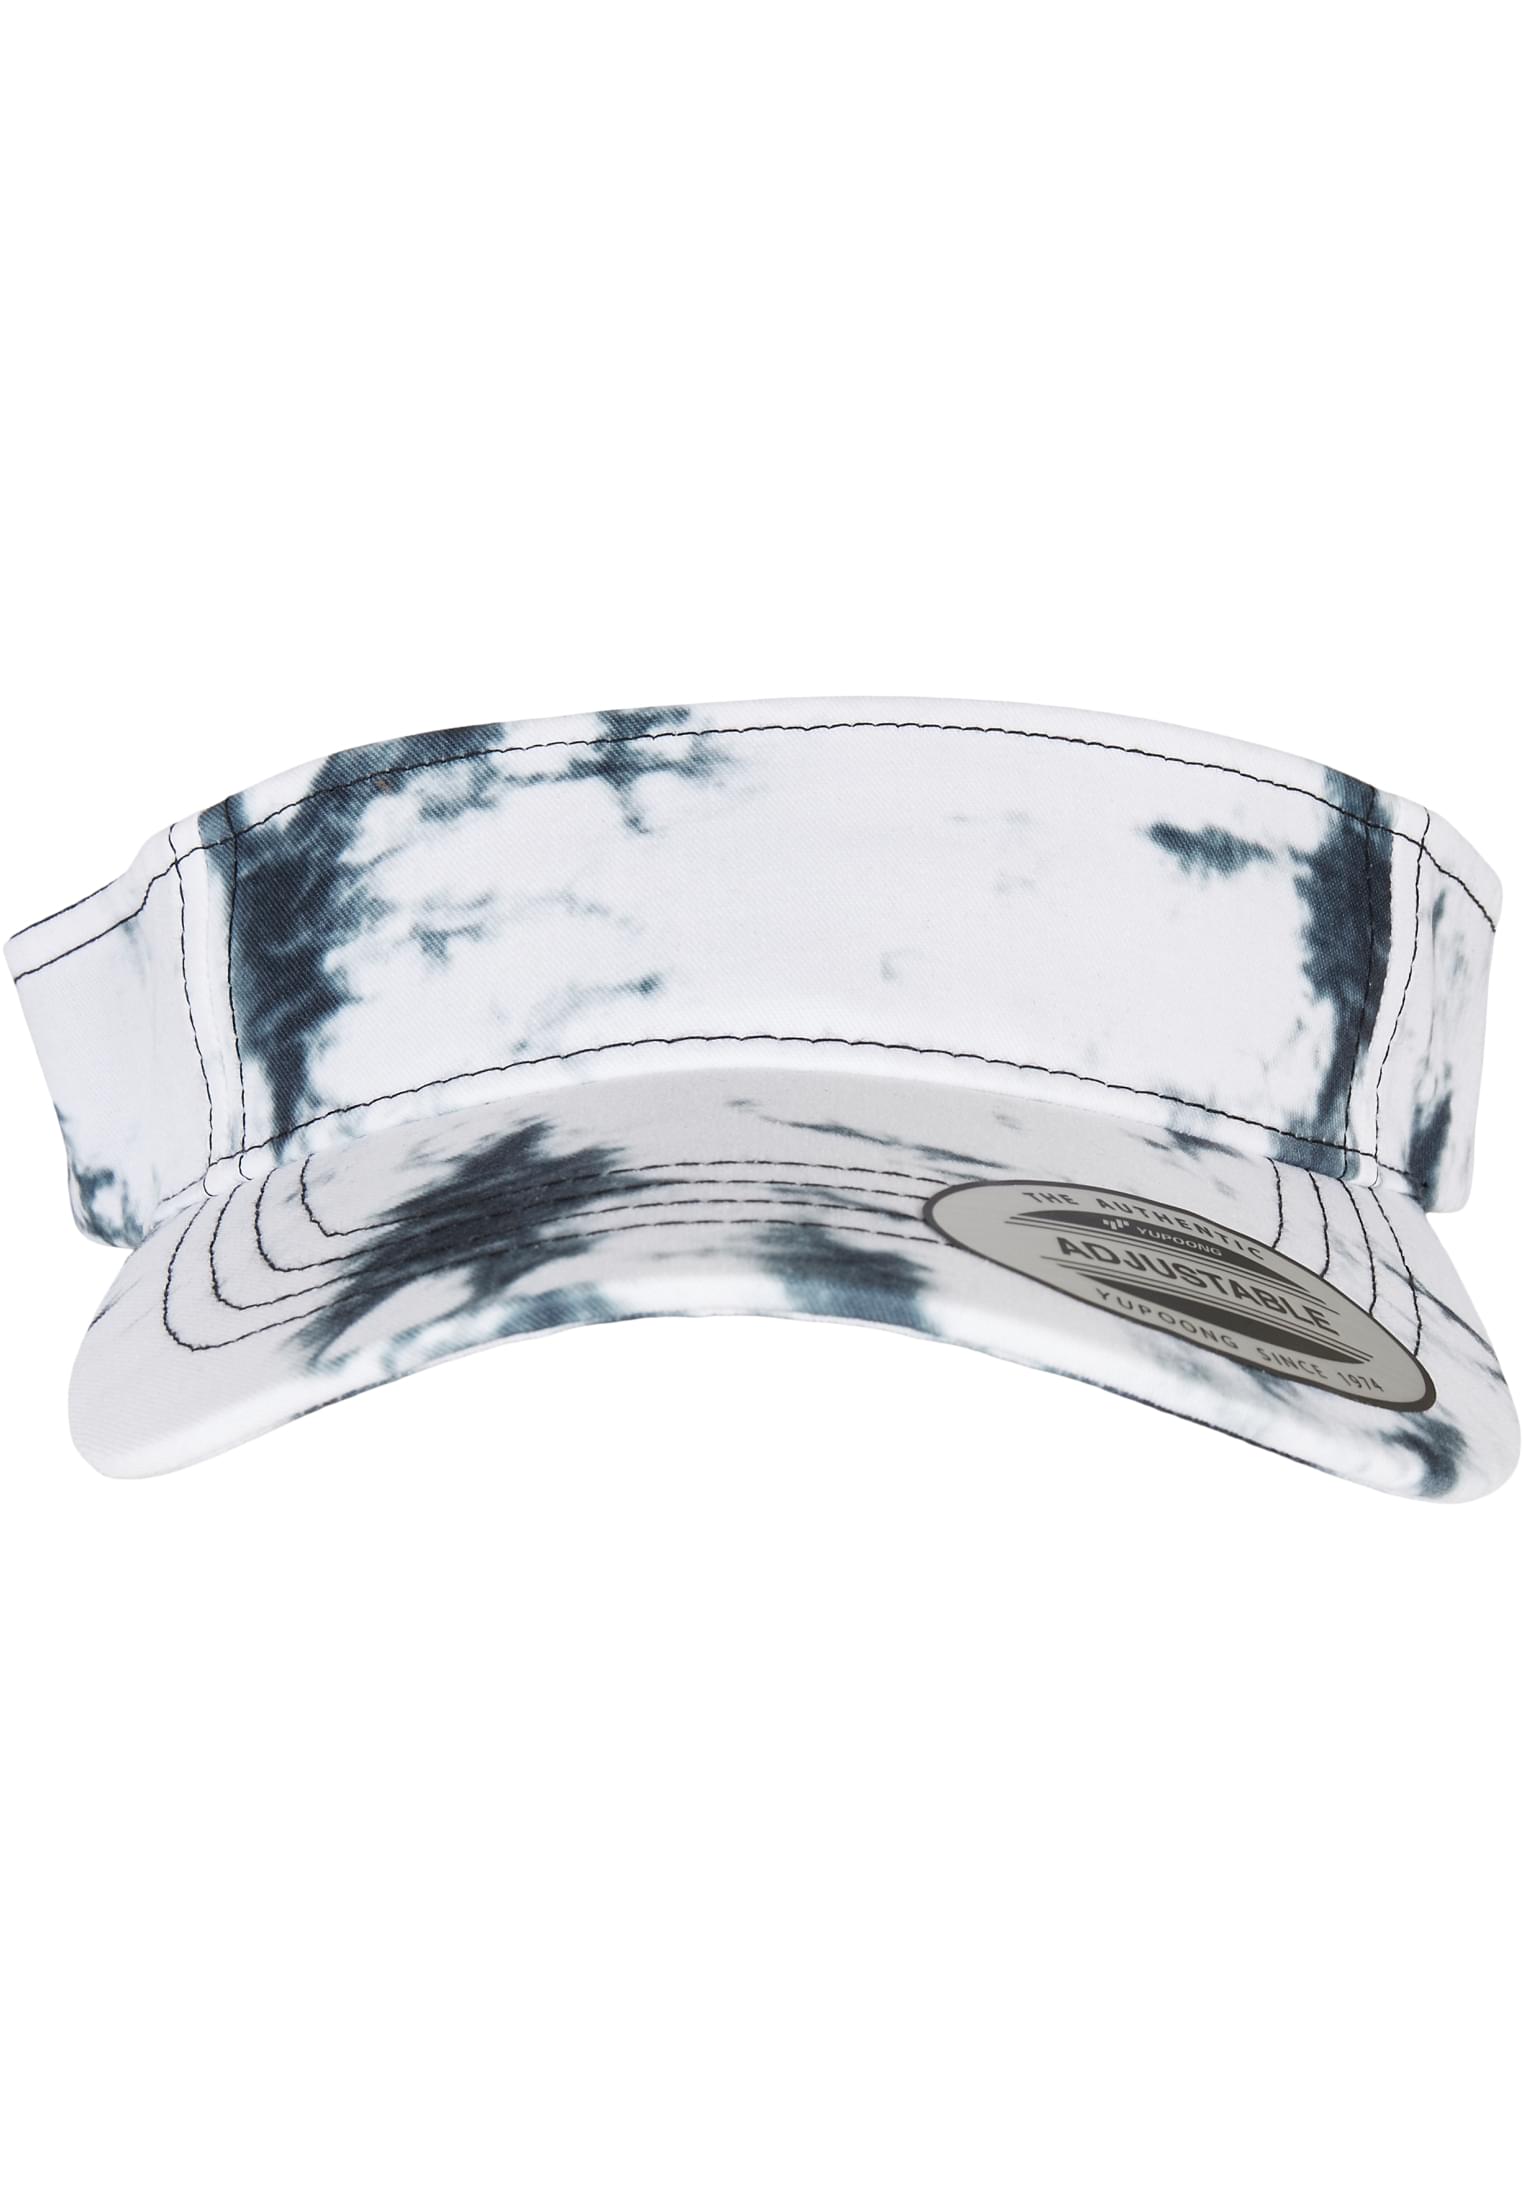 Snapback Batik Dye Curved Visor Cap in Farbe black/white